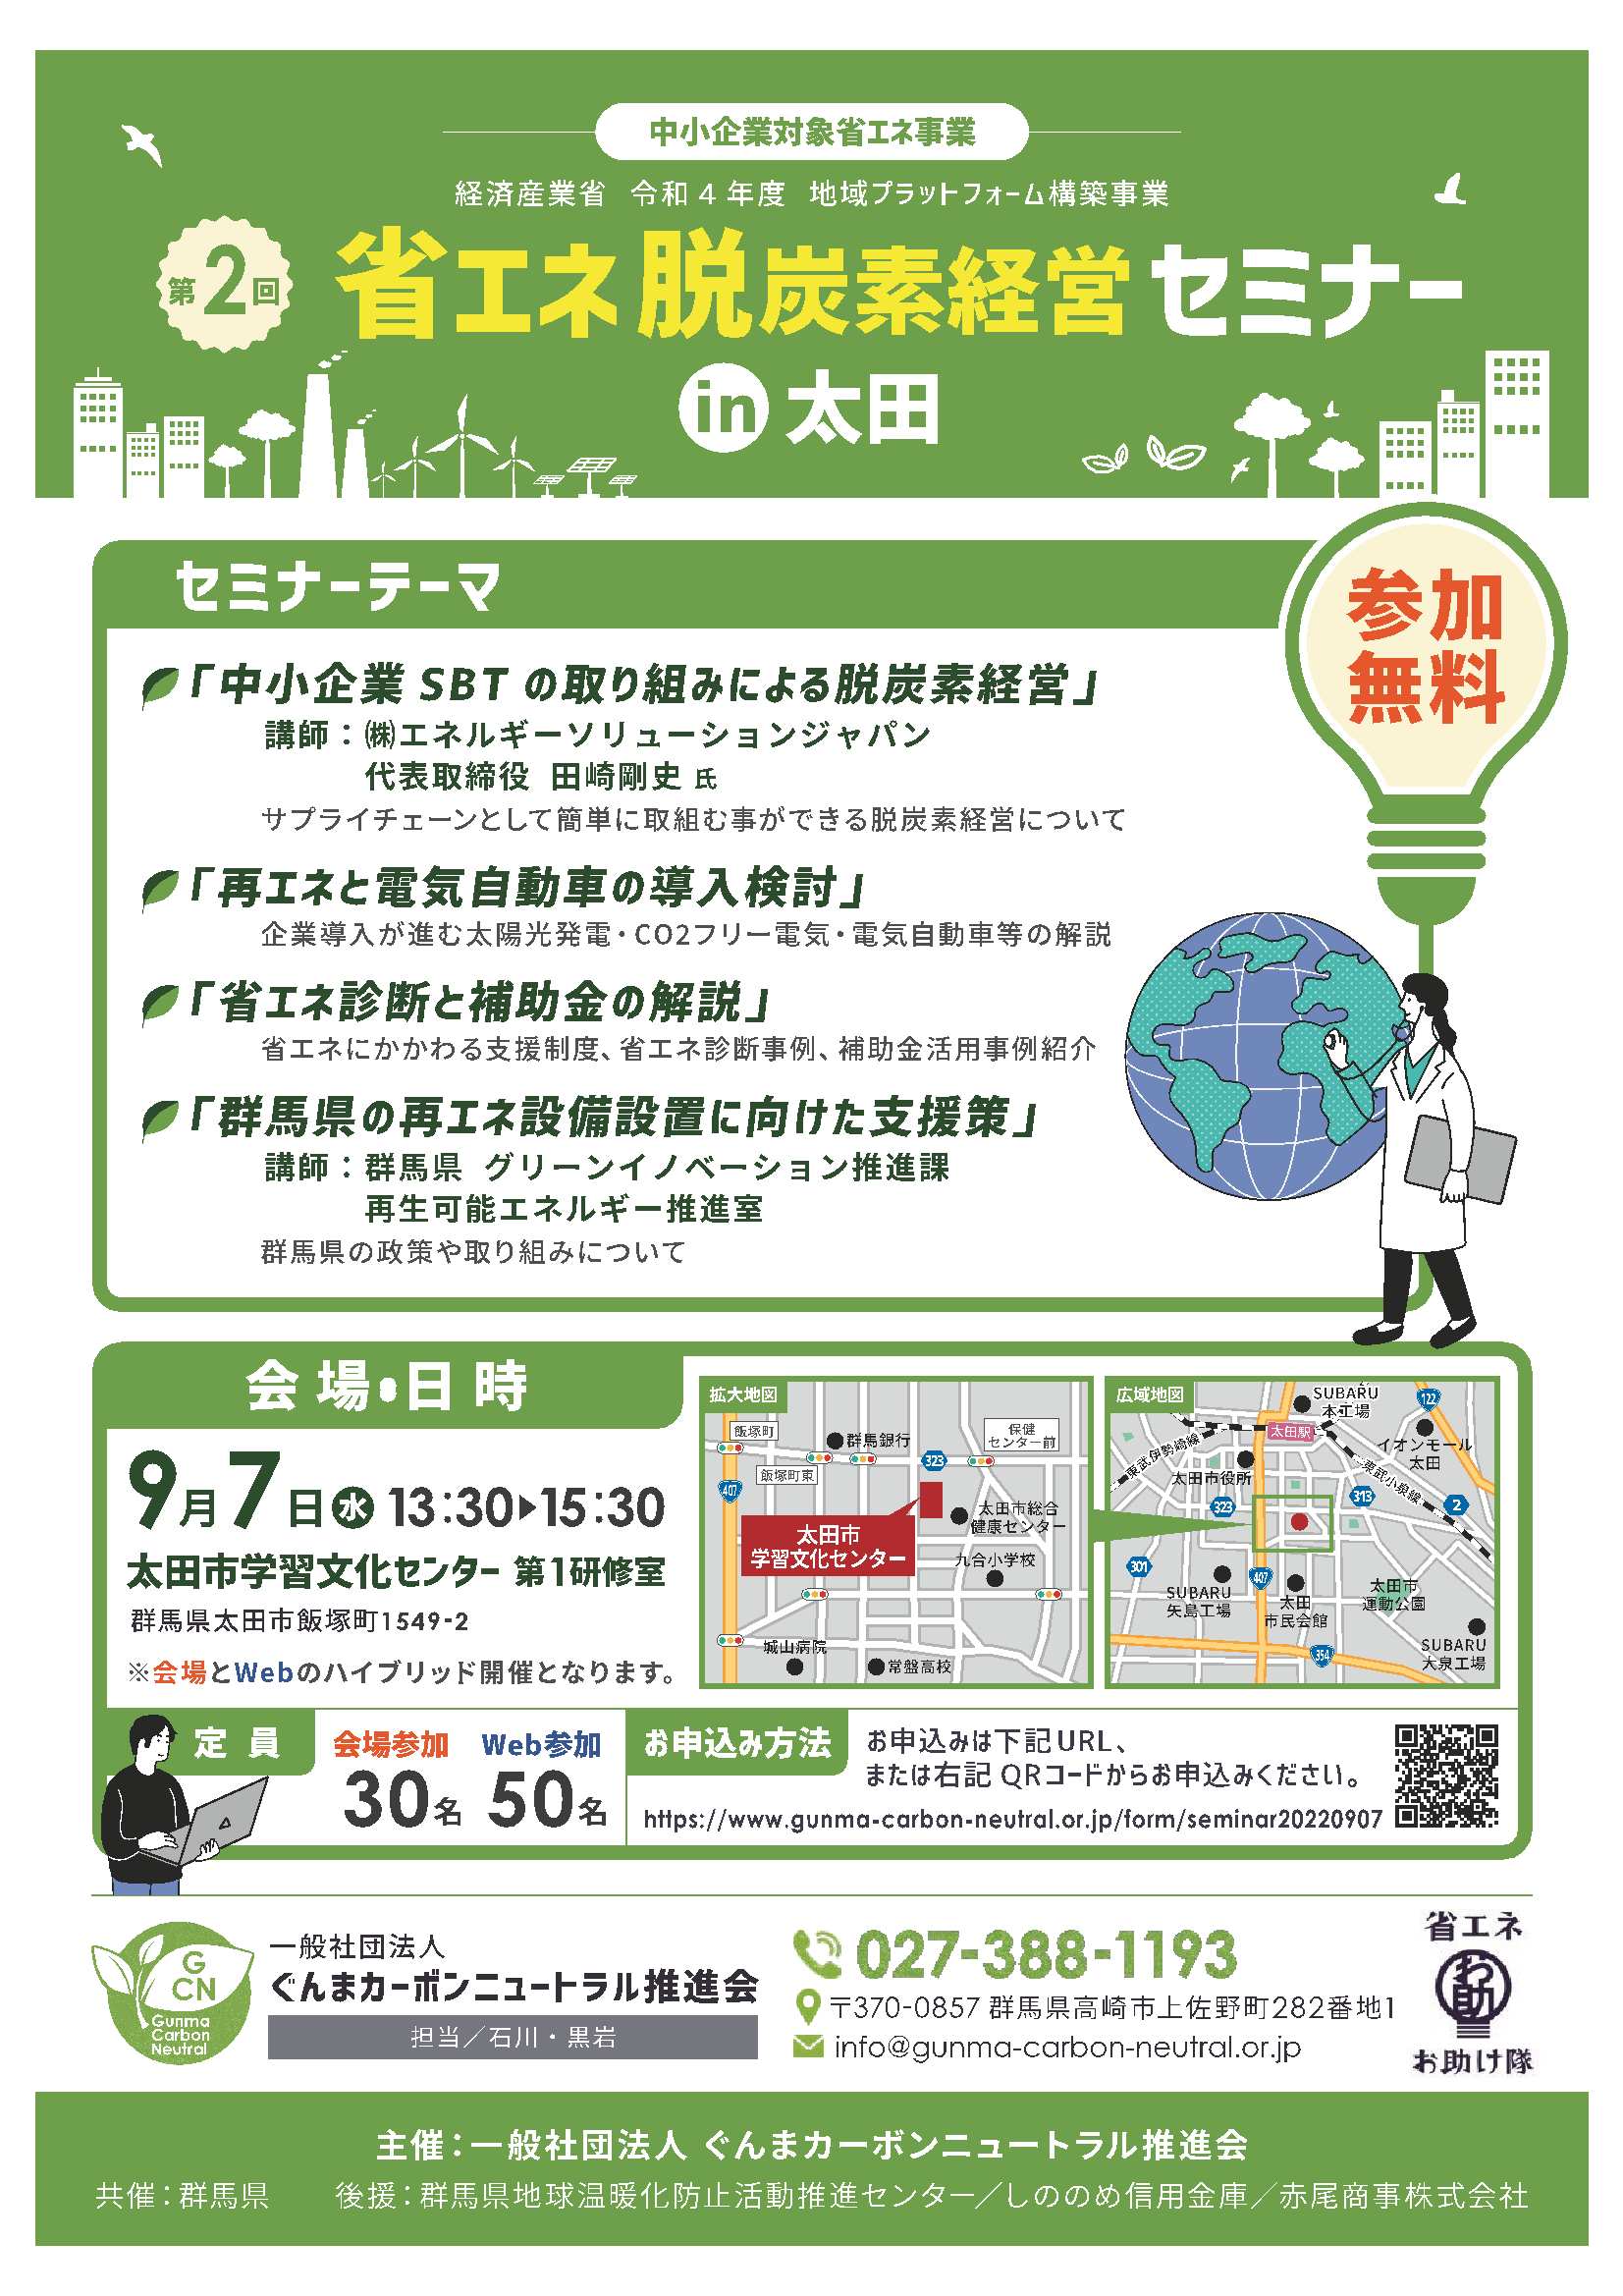 第2回省エネ・脱炭素セミナーin太田を開催します！